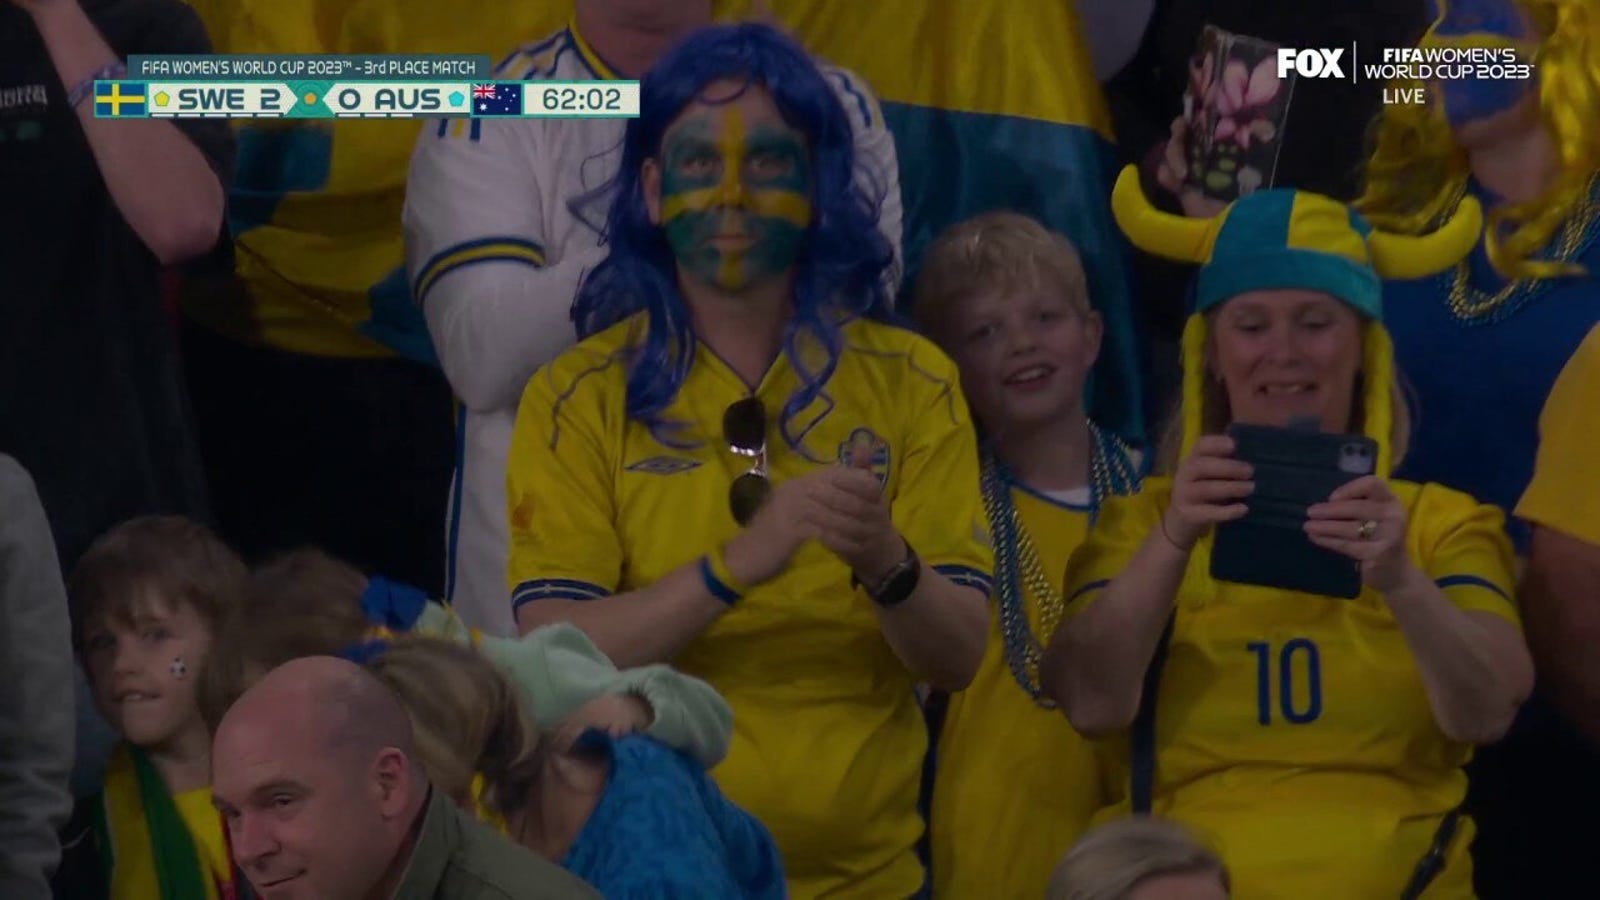 Sweden's Kosovare Asllani scores goal vs. Australia in 62'